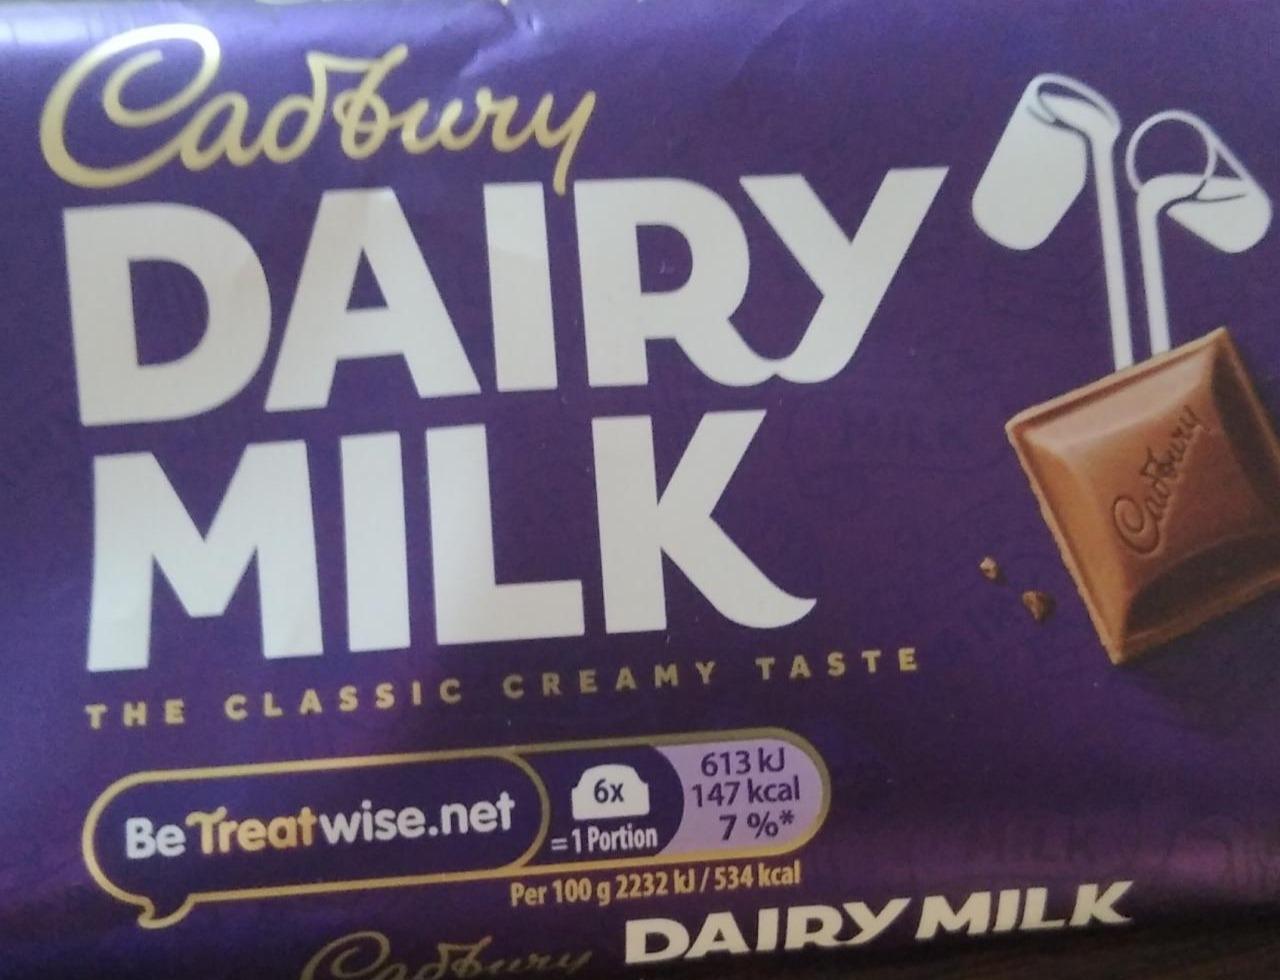 Zdjęcia - Dairy milk Czekolada Cadbury